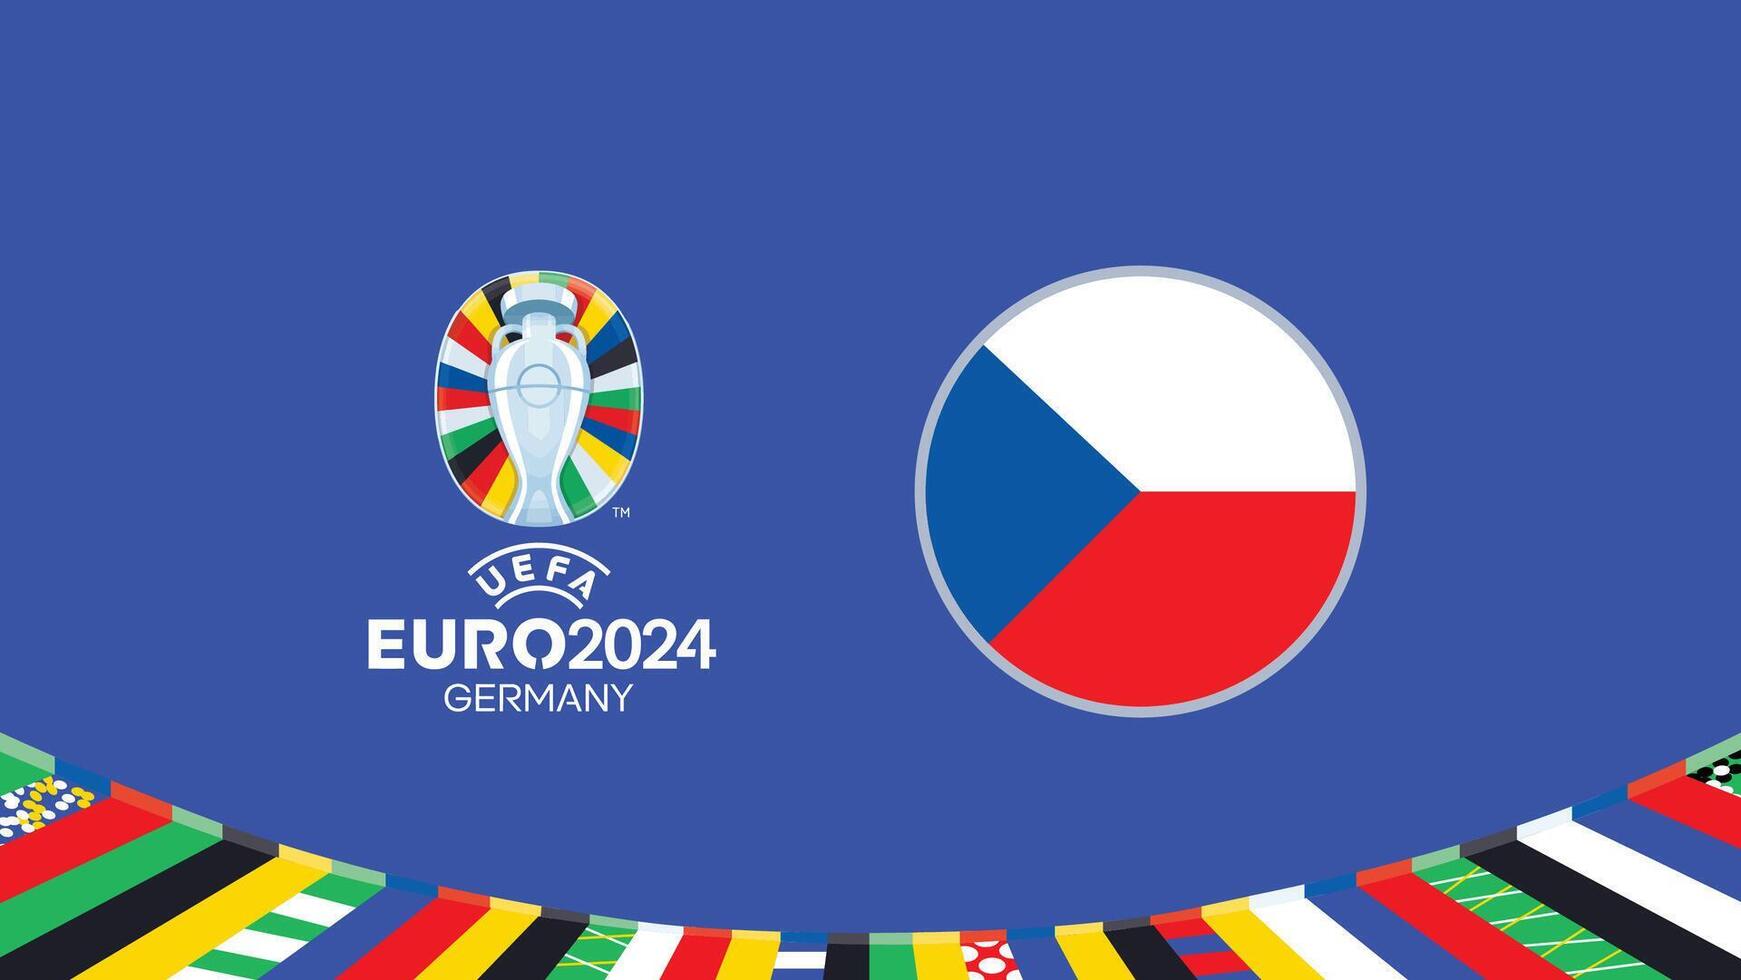 euro 2024 Allemagne tchèque drapeau équipes conception avec officiel symbole logo abstrait des pays européen Football illustration vecteur